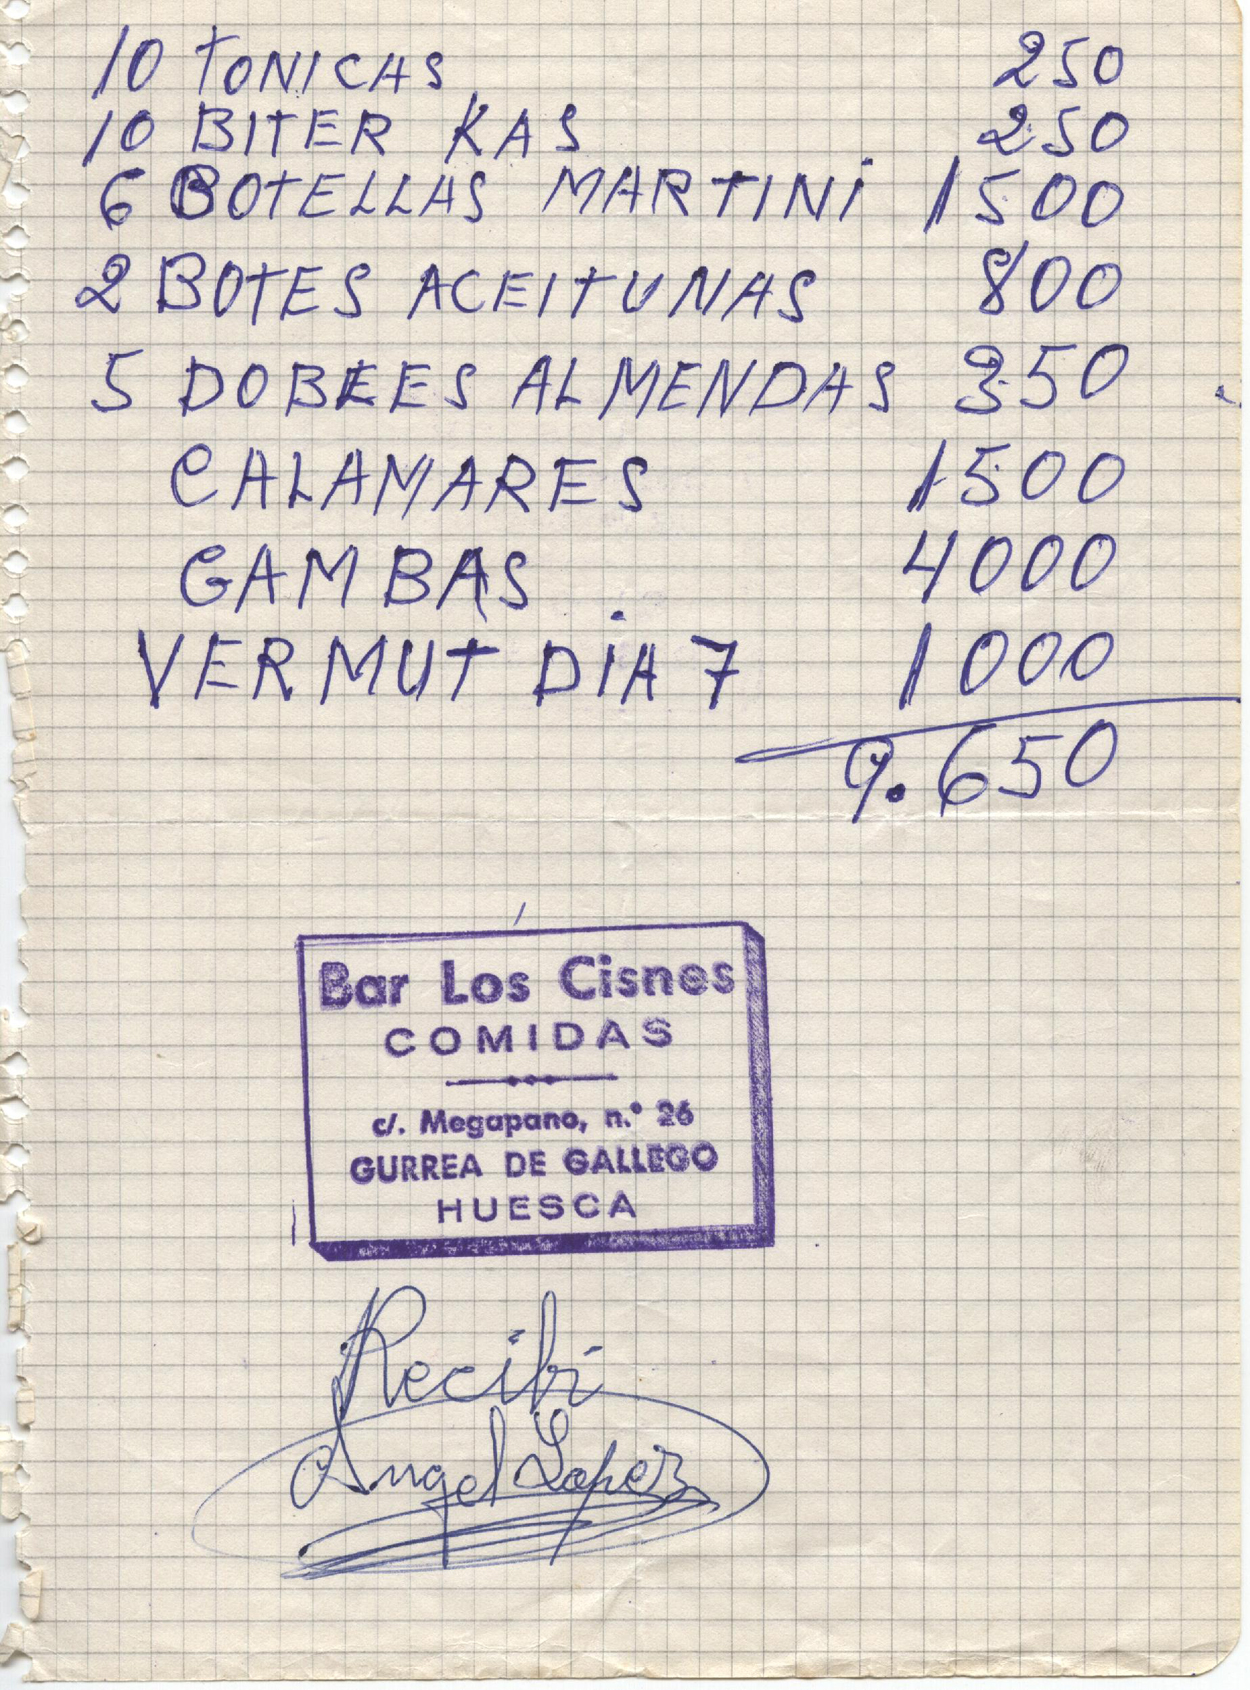 Recibí del vermú del día 7 de septiembre en el bar Los Cisnes de Gurrea de Gállego, con indicación de los aperitivos: aceitunas, almendras, calamares y gambas.